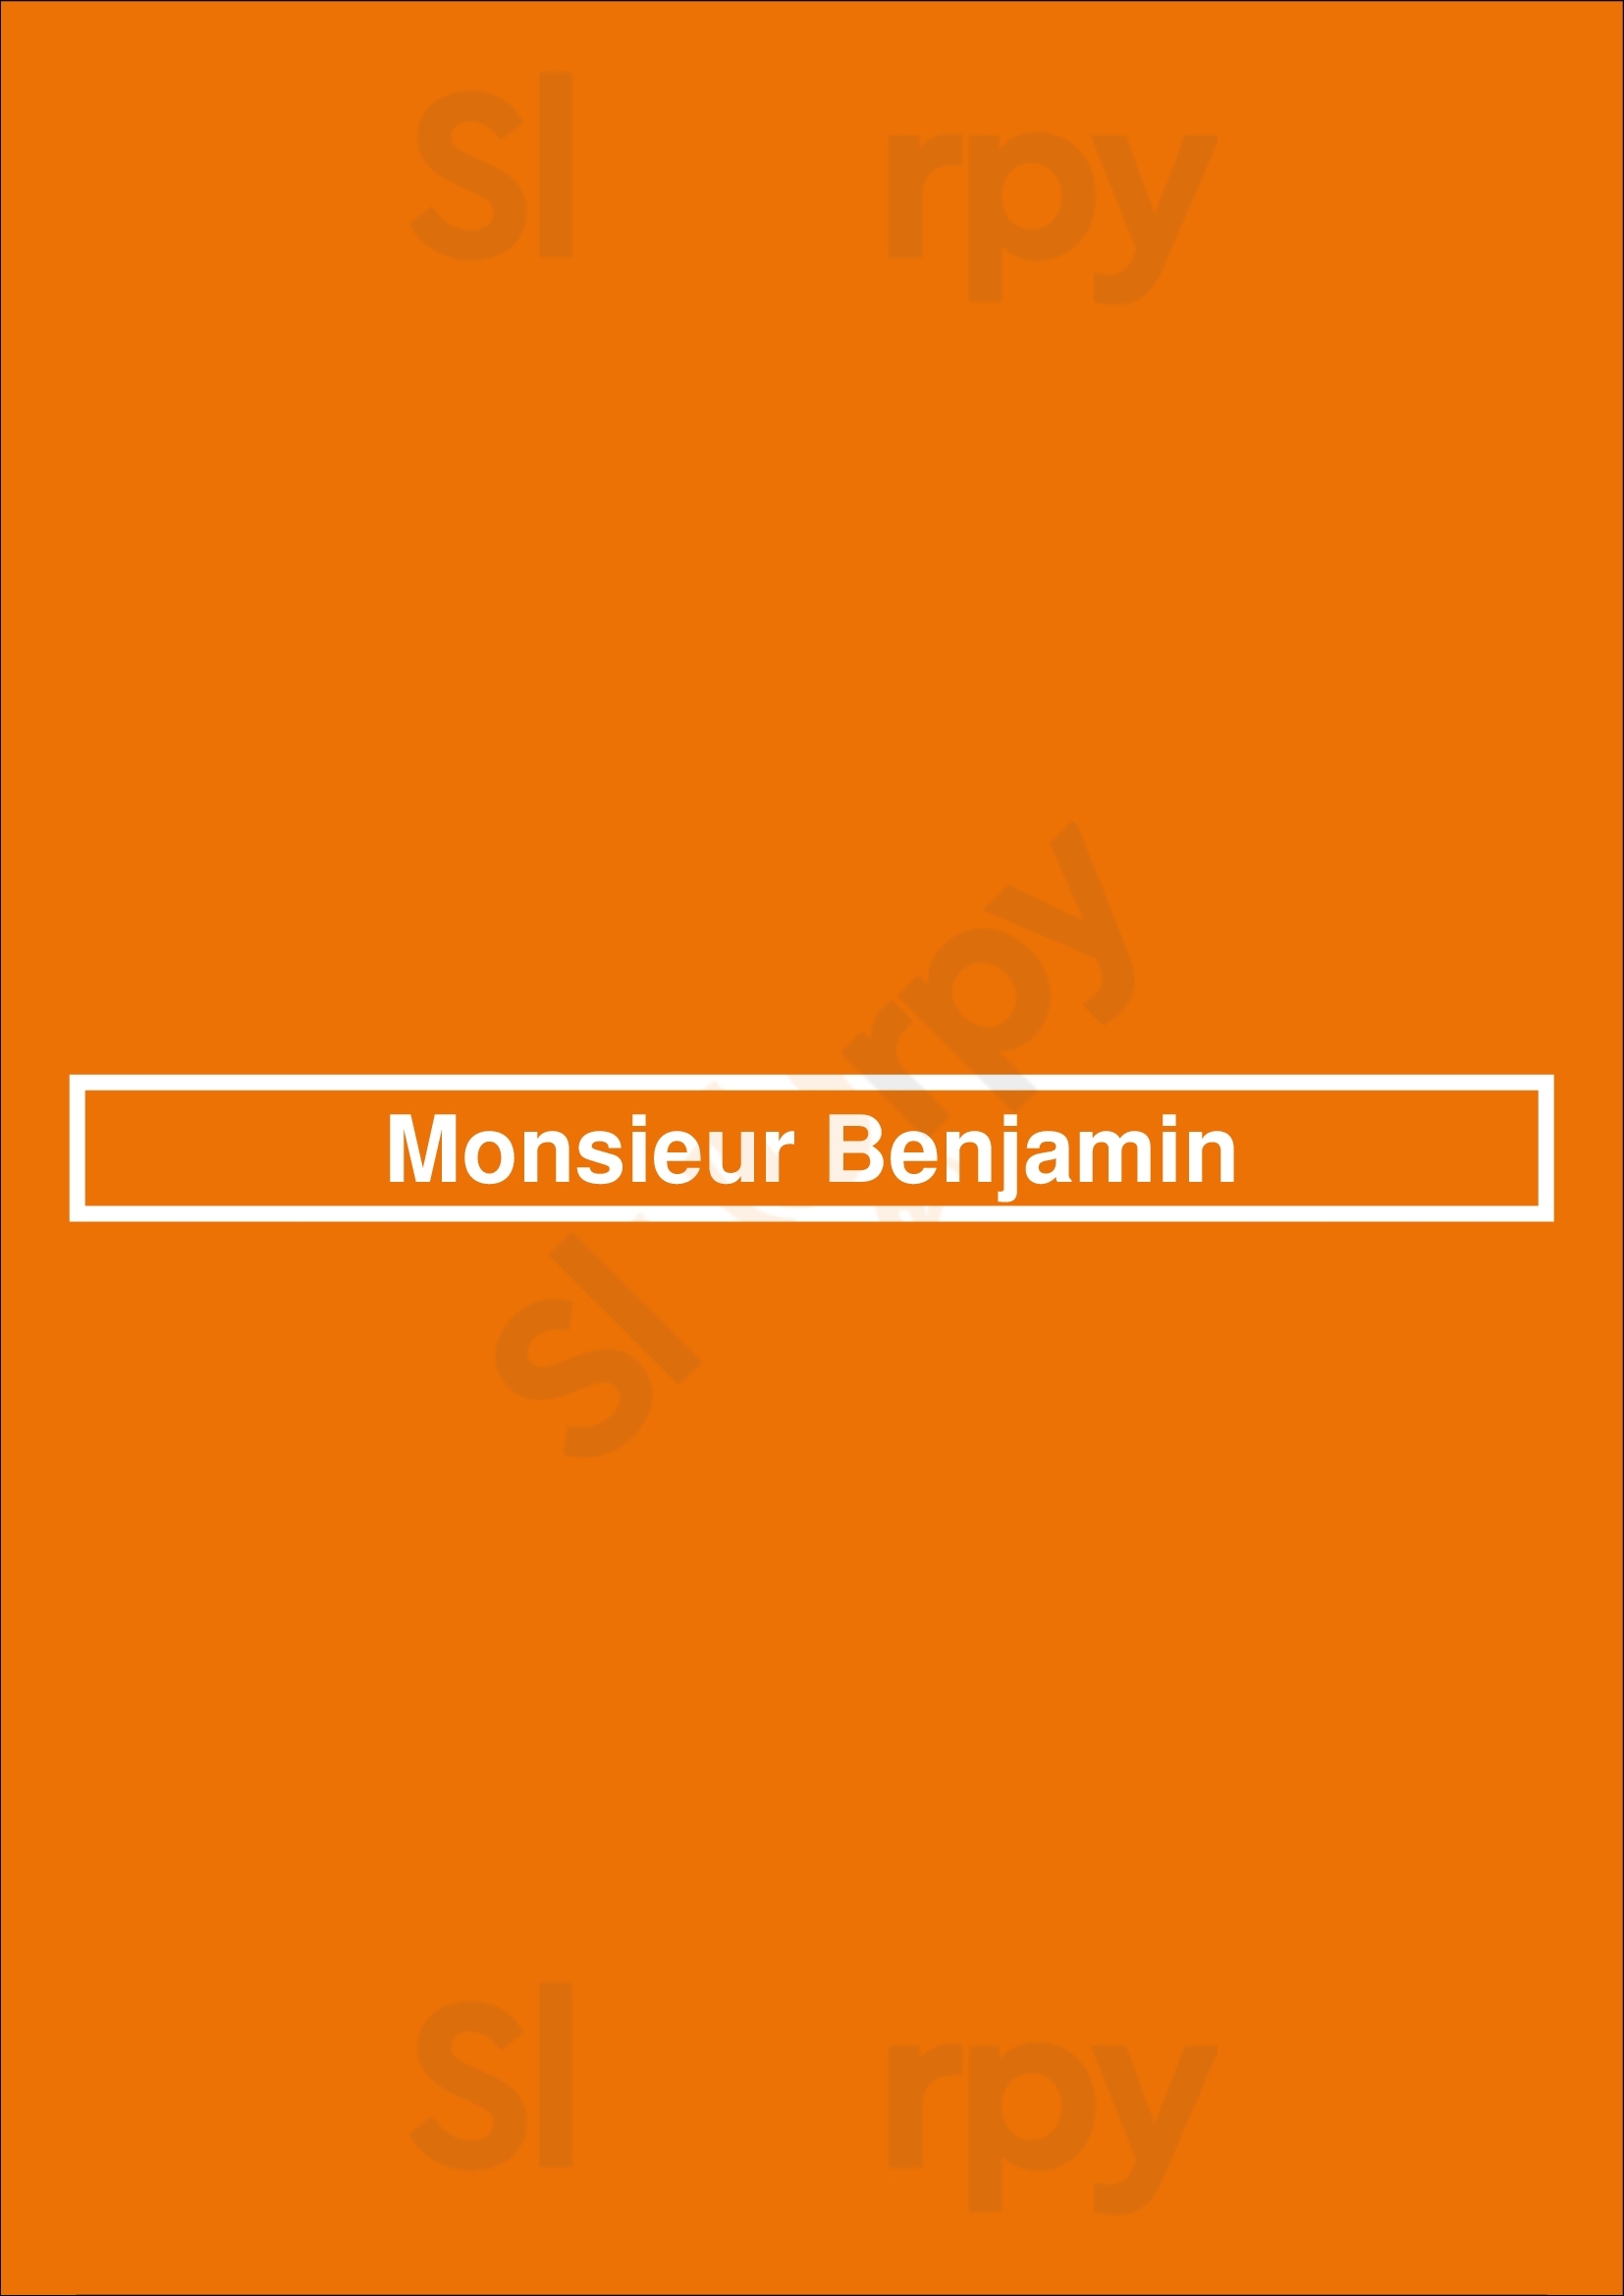 Monsieur Benjamin San Francisco Menu - 1